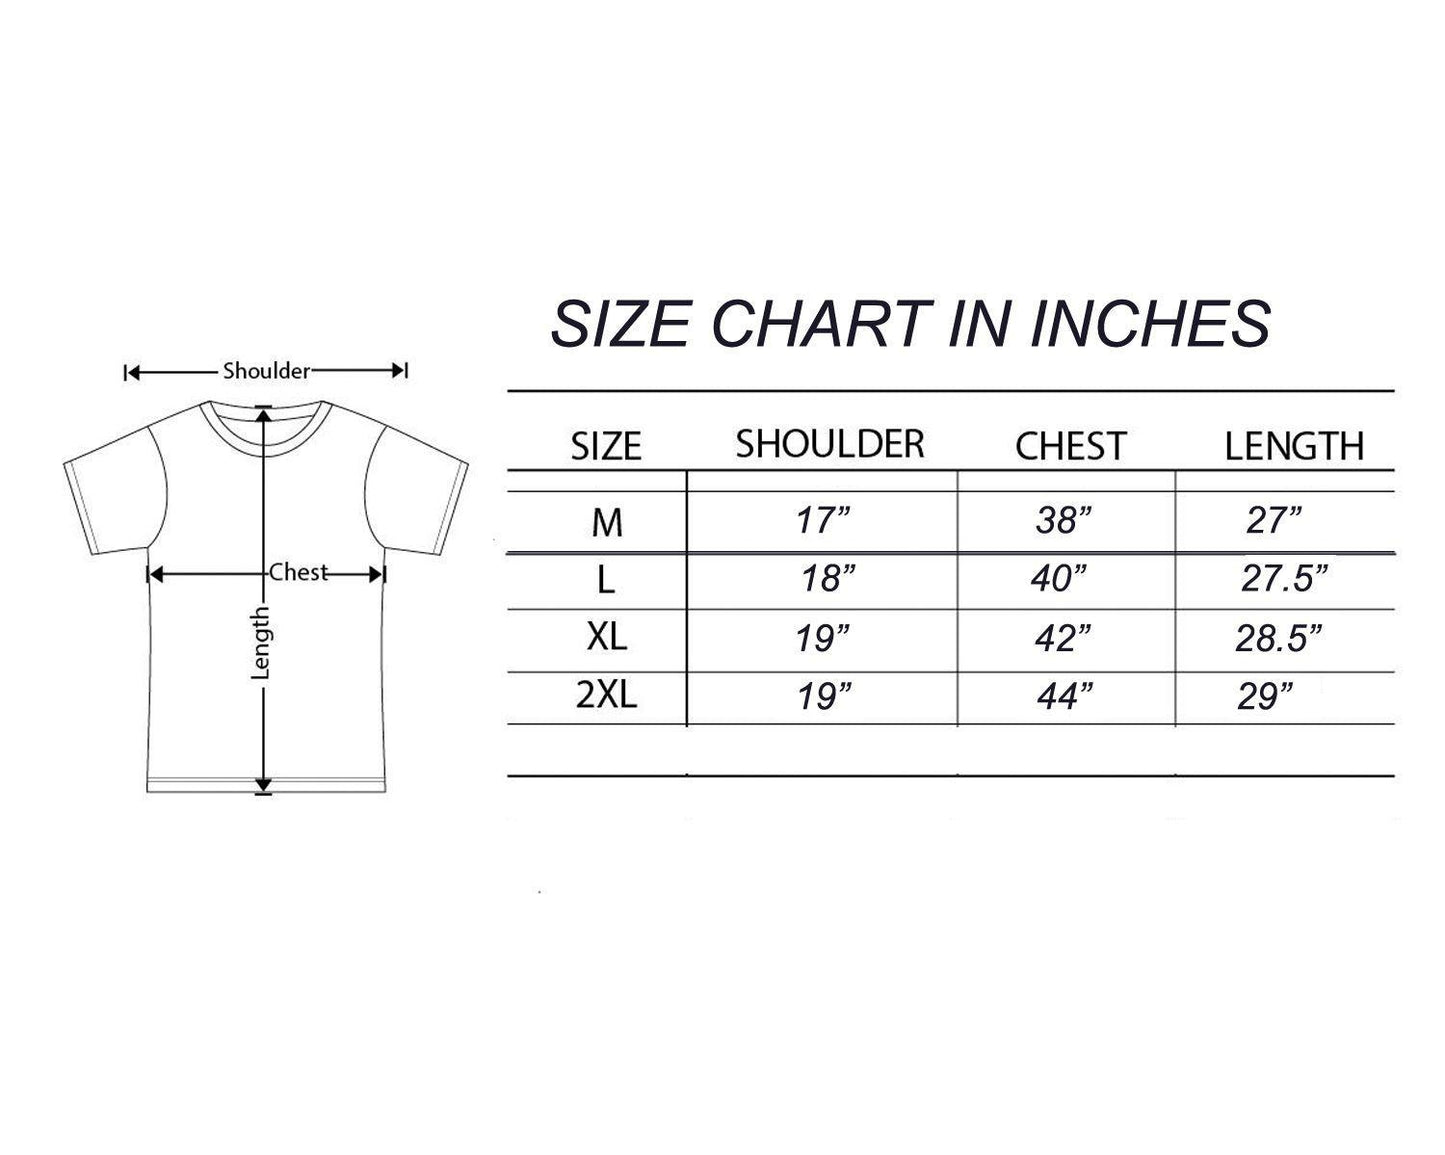 Cotton Blend Full Sleeves Trendy Tshirt For Men's (Pack of 5)